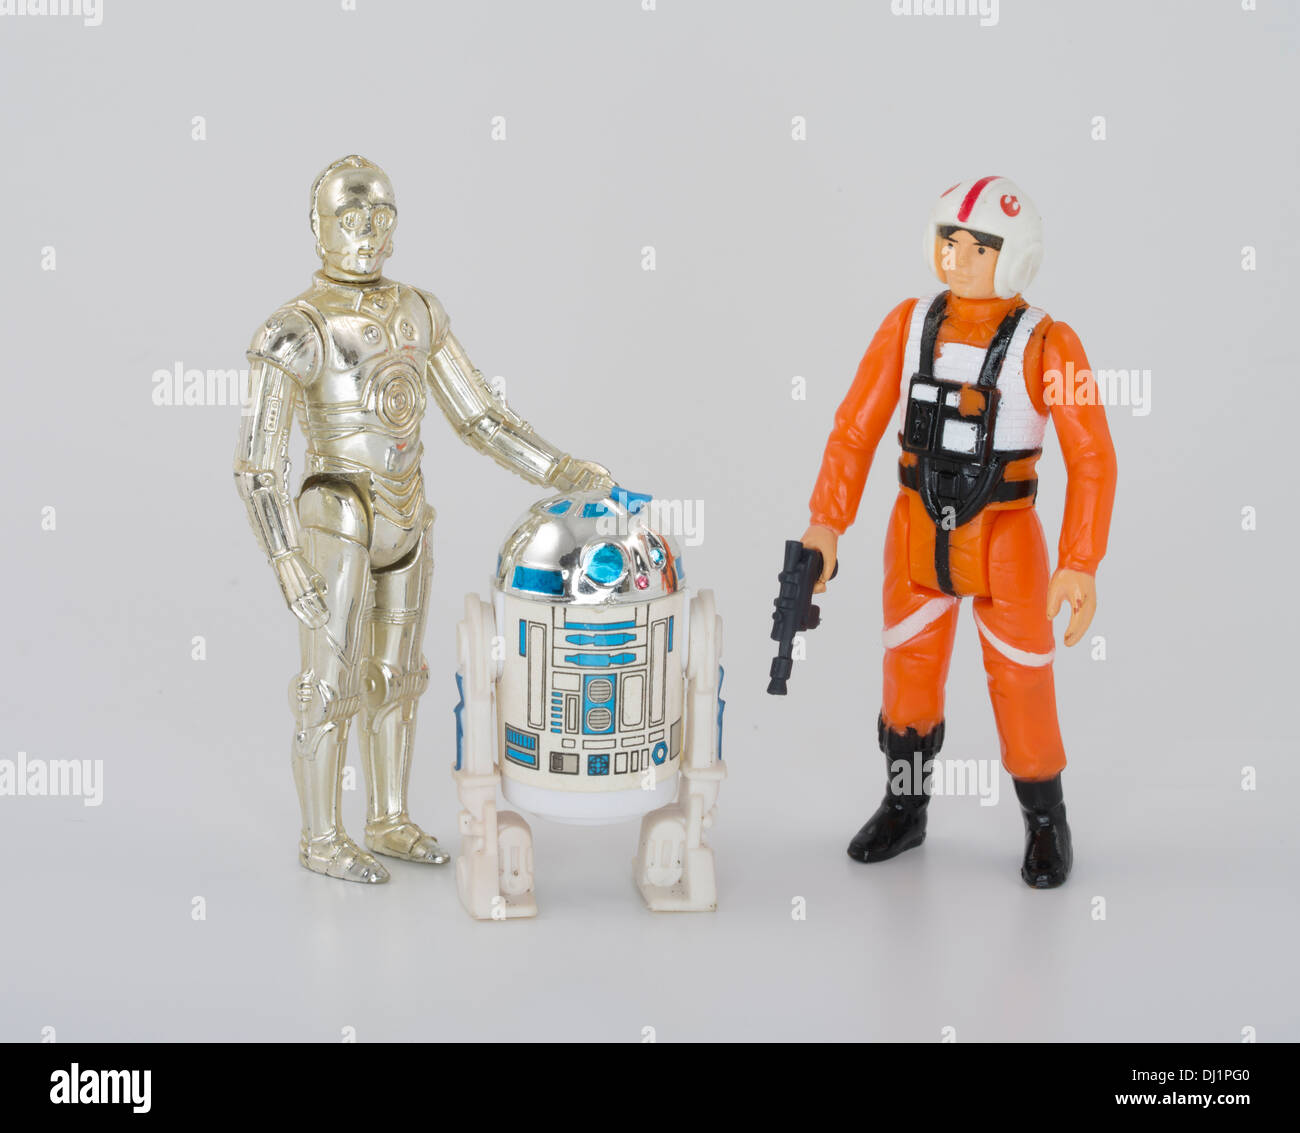 Star Wars 1977 vintage Kenner action figures C-3PO R2-D2 Luke Skywalker Stock Photo